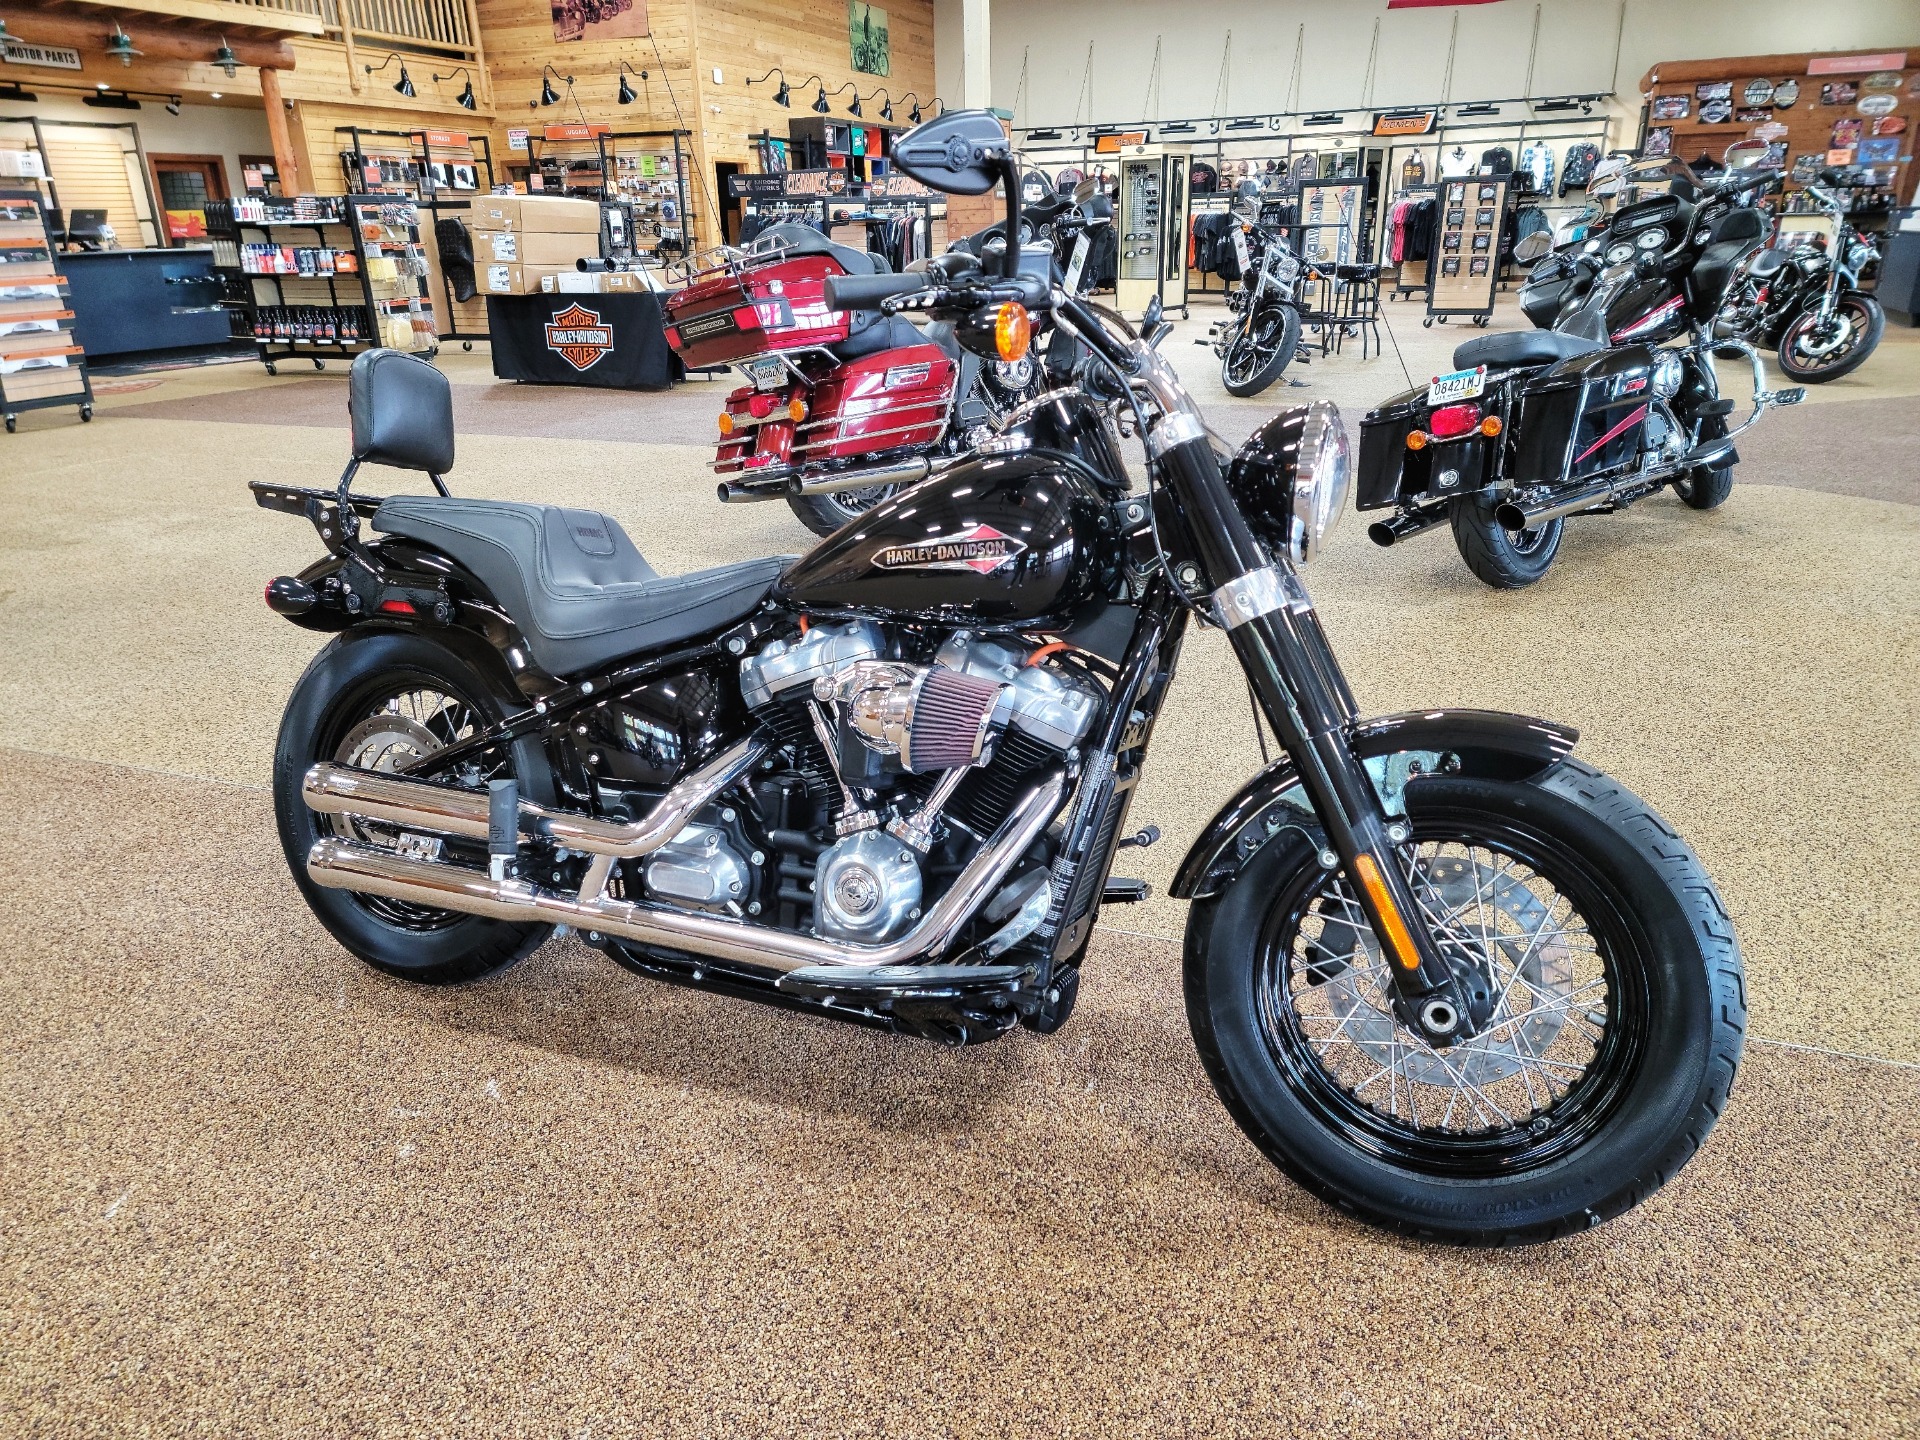 Used 2018 Harley Davidson Softail Slim 107 Vivid Black Motorcycles In Sauk Rapids Mn B0035